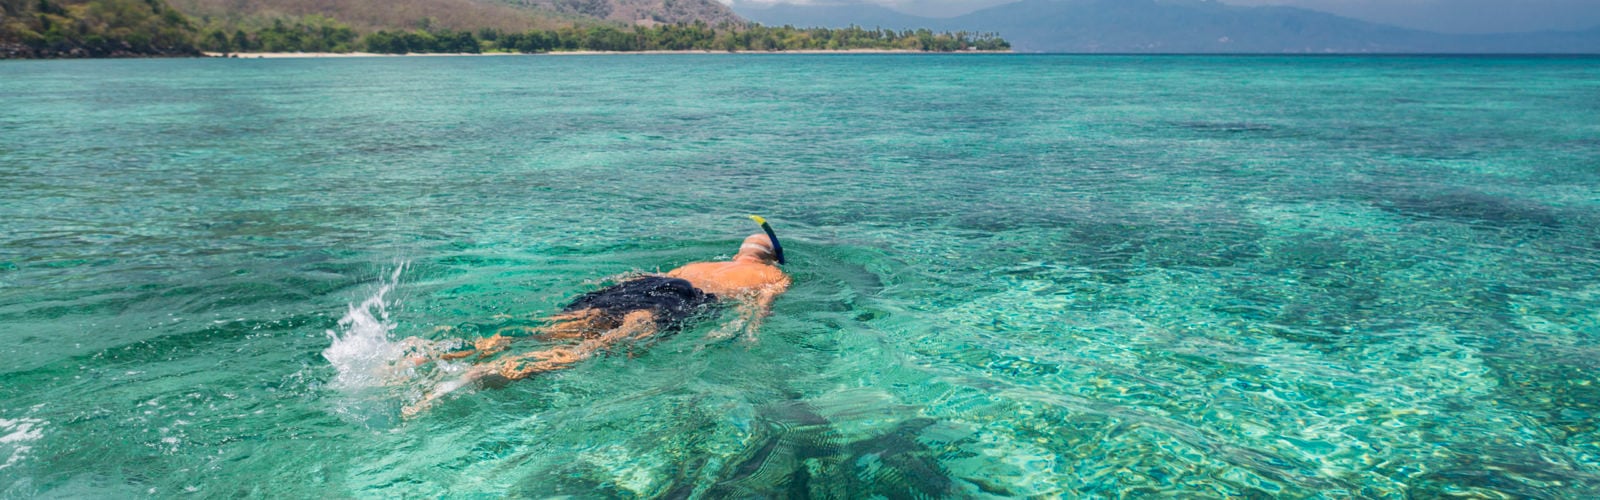 Man snorkeling in crystal blue waters, Komodo Islands, Indonesia